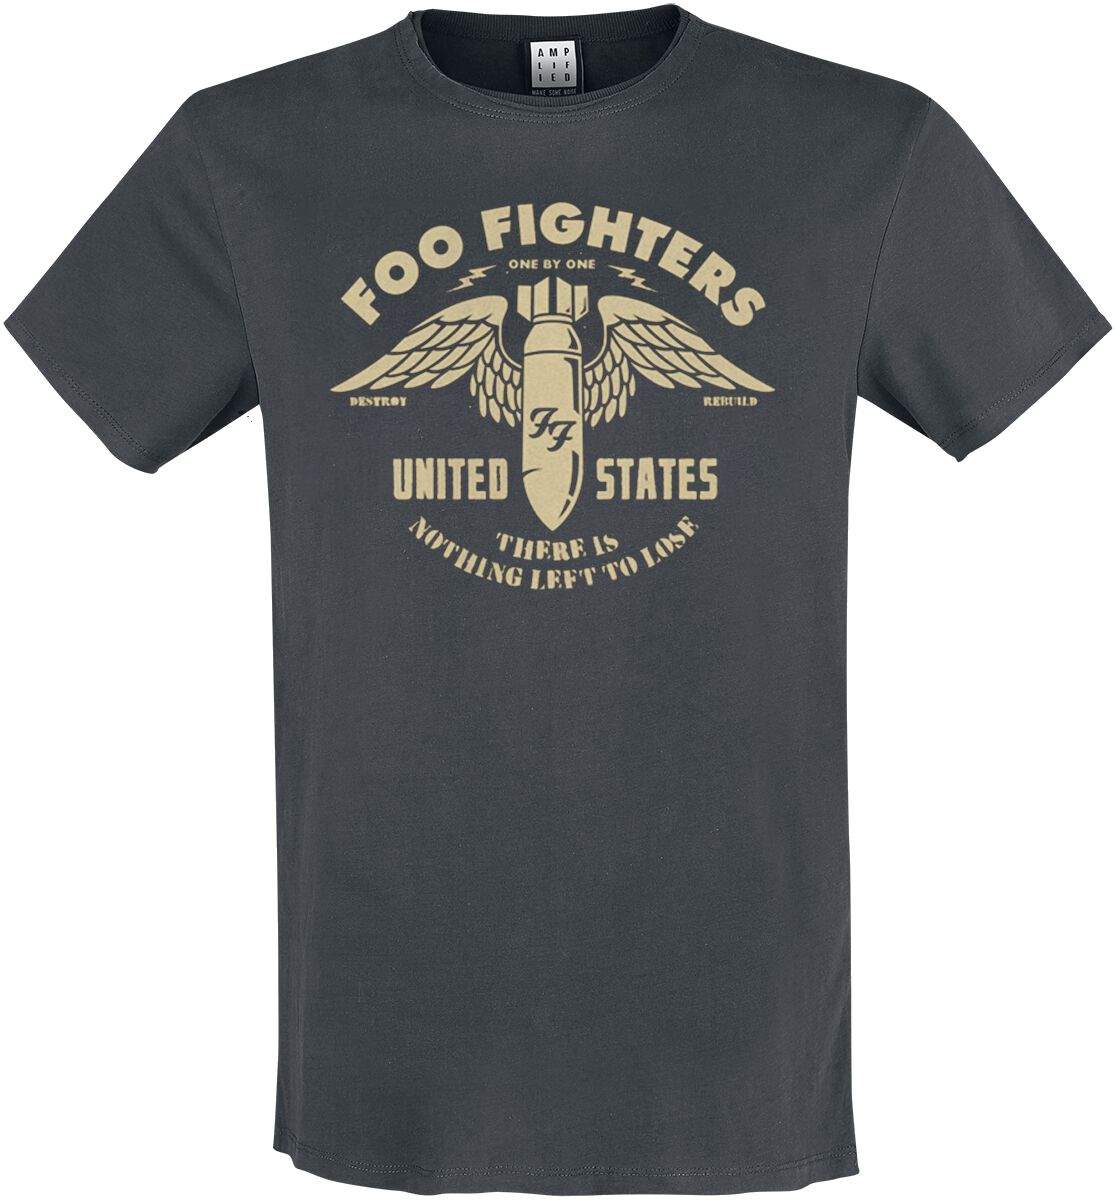 Foo Fighters T-Shirt - Amplified Collection - One By One - S bis 3XL - für Männer - Größe XL - charcoal  - Lizenziertes Merchandise!